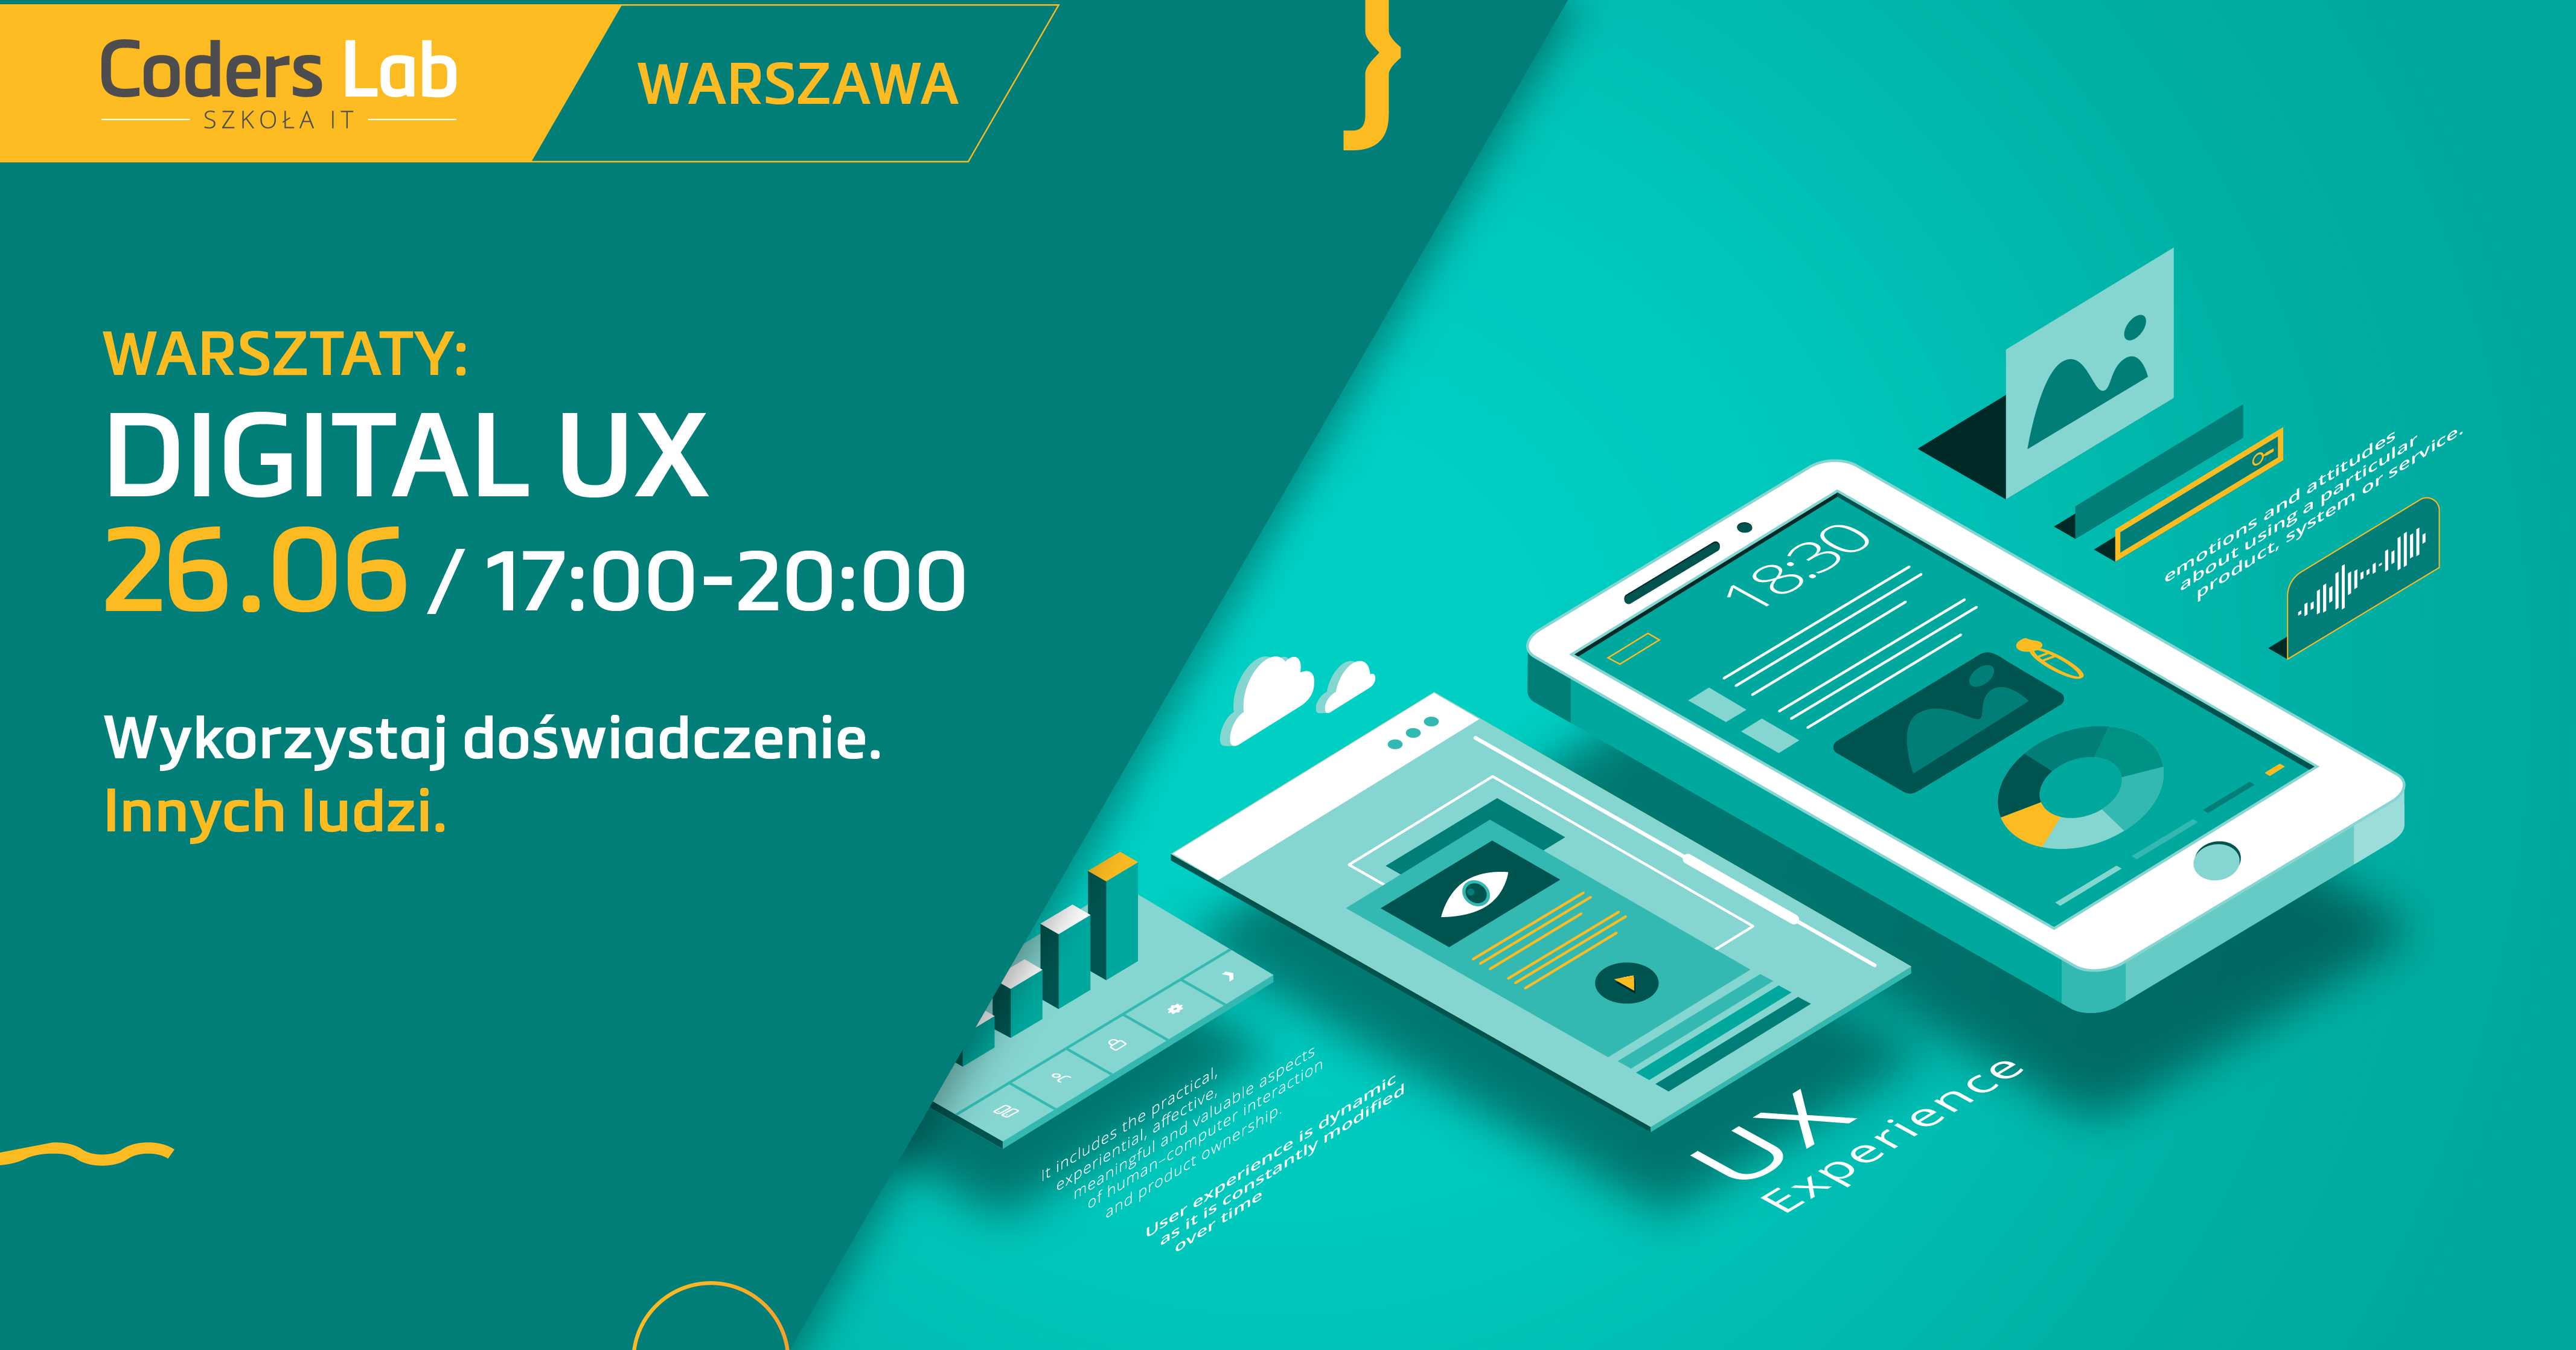 coders-lab-szkola-it-warsztaty-digital-ux-w-warszawie-czerwiec-2018